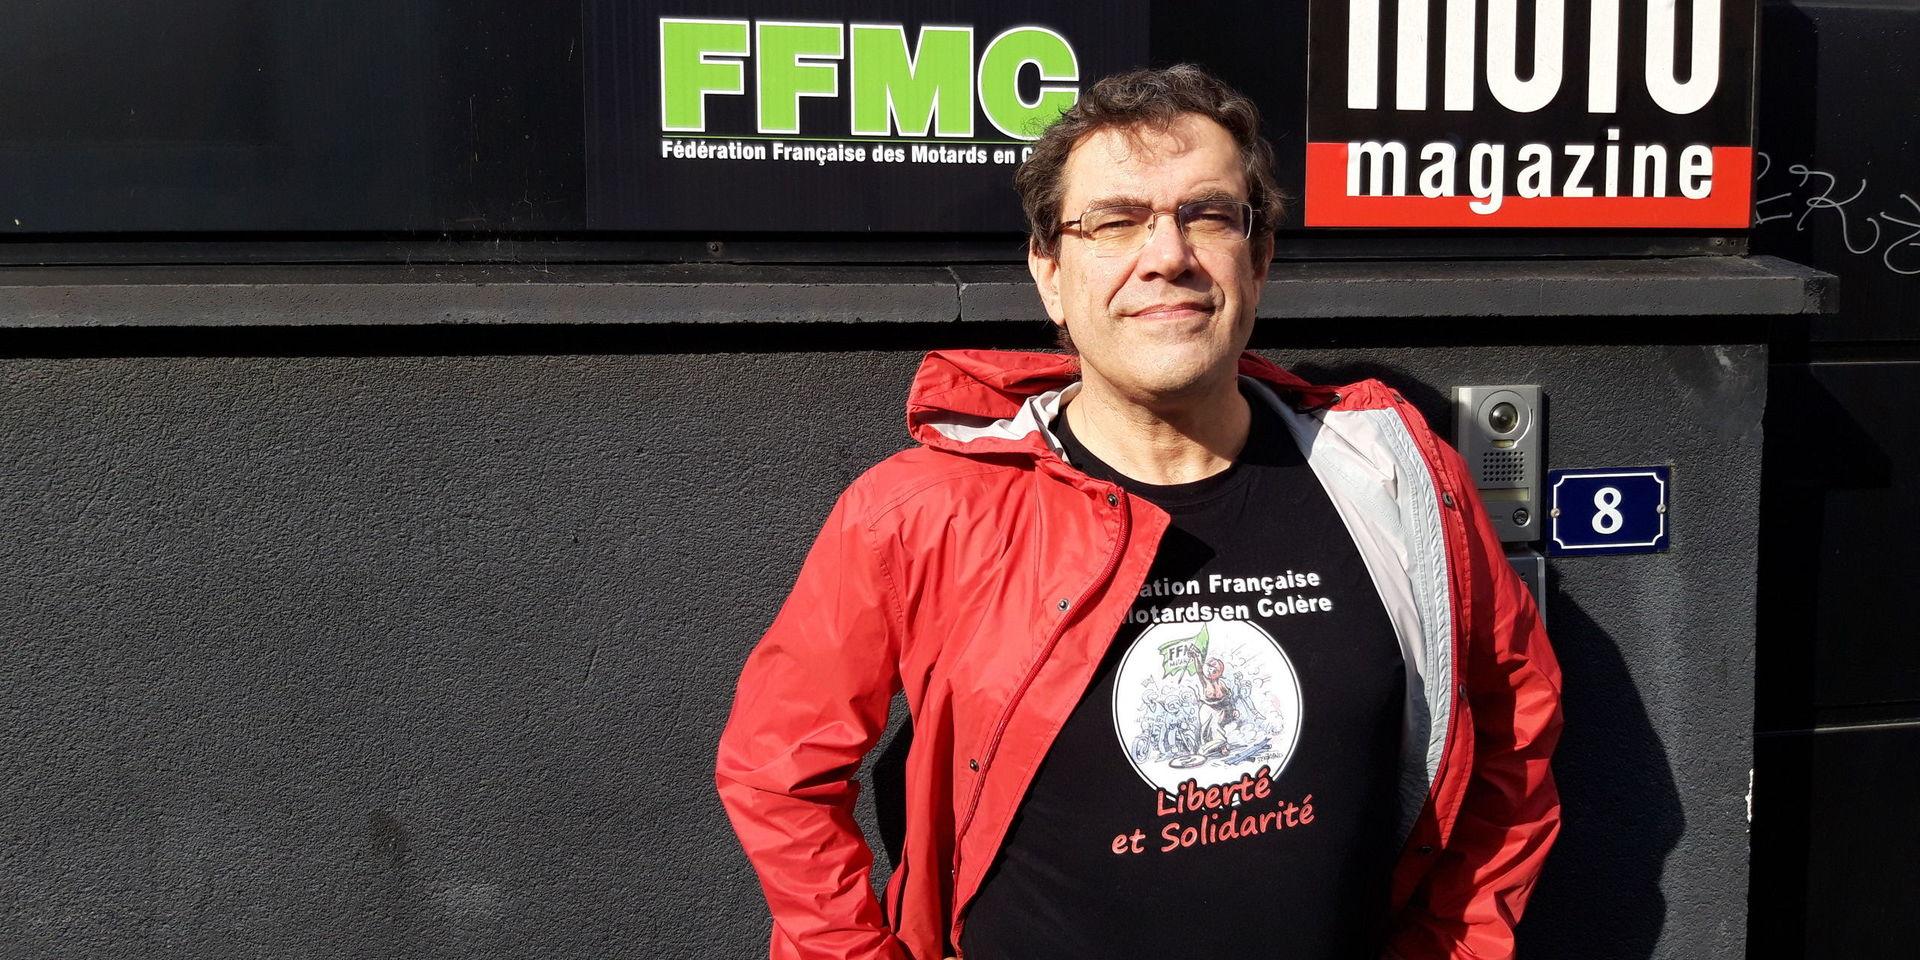 För mc-förbundet FFMC är oljud mc-förarnas värsta fiende, menar Didier Renoux på FMMC.